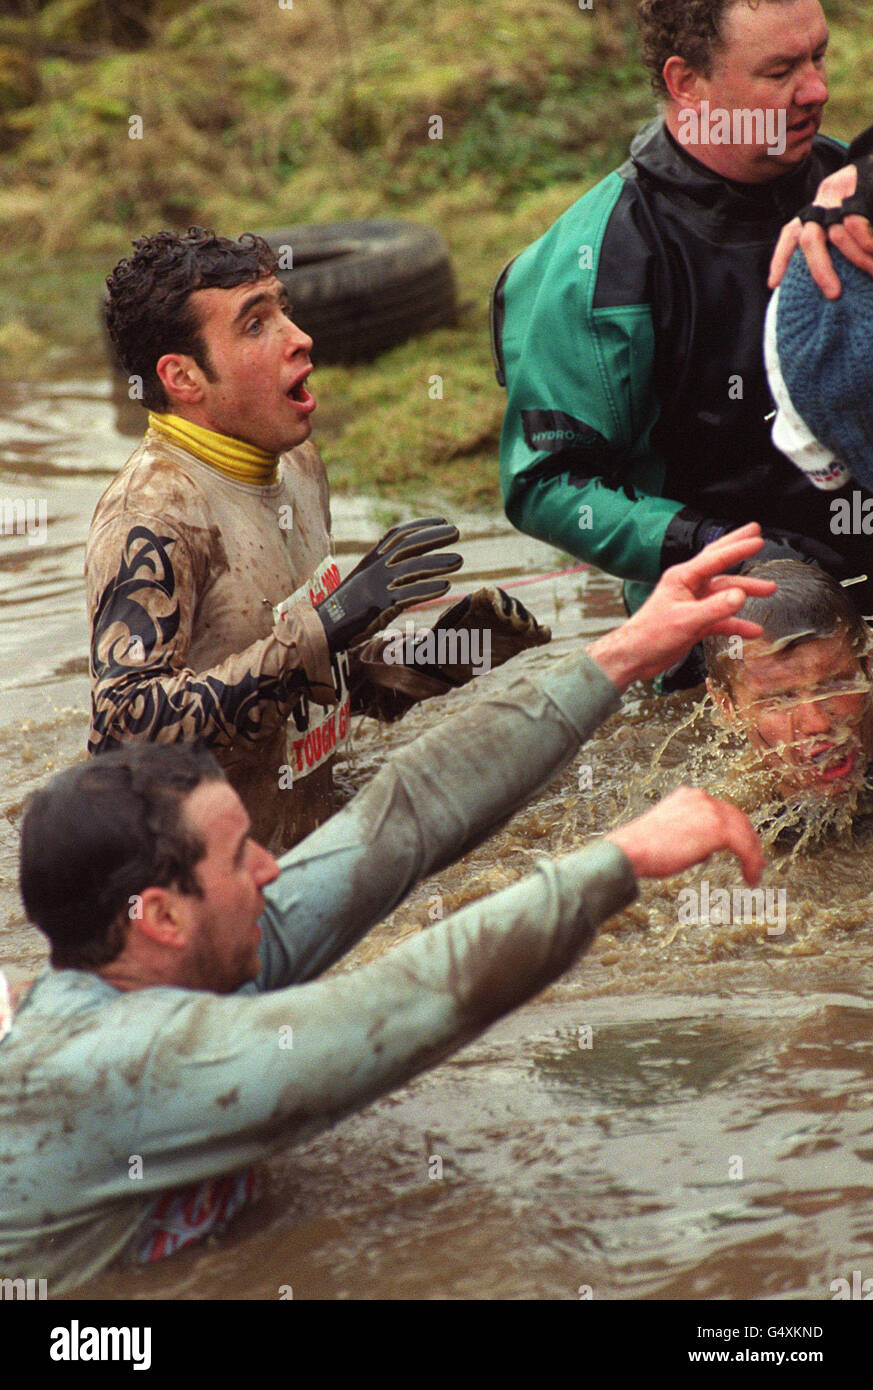 Teilnehmer des harten Guy 2000 Langstreckenrennens für wohltätige Zwecke in Staffordshire. Der gewundene Kurs beinhaltet ein elektrifiziertes Kletternetz, eiskalte Unterwasserschwimmen und eine Nachstellung der Dünkirchen-Landungen. * Michael Green, 44, aus Groby, in der Nähe von Leicester, starb im Krankenhaus nach einem Verdacht auf Herzinfarkt beim Rennen. Er hatte etwa drei Viertel der sieben-Meilen-Kurs abgeschlossen, bevor sie sich über Kälte beschwert. Stockfoto